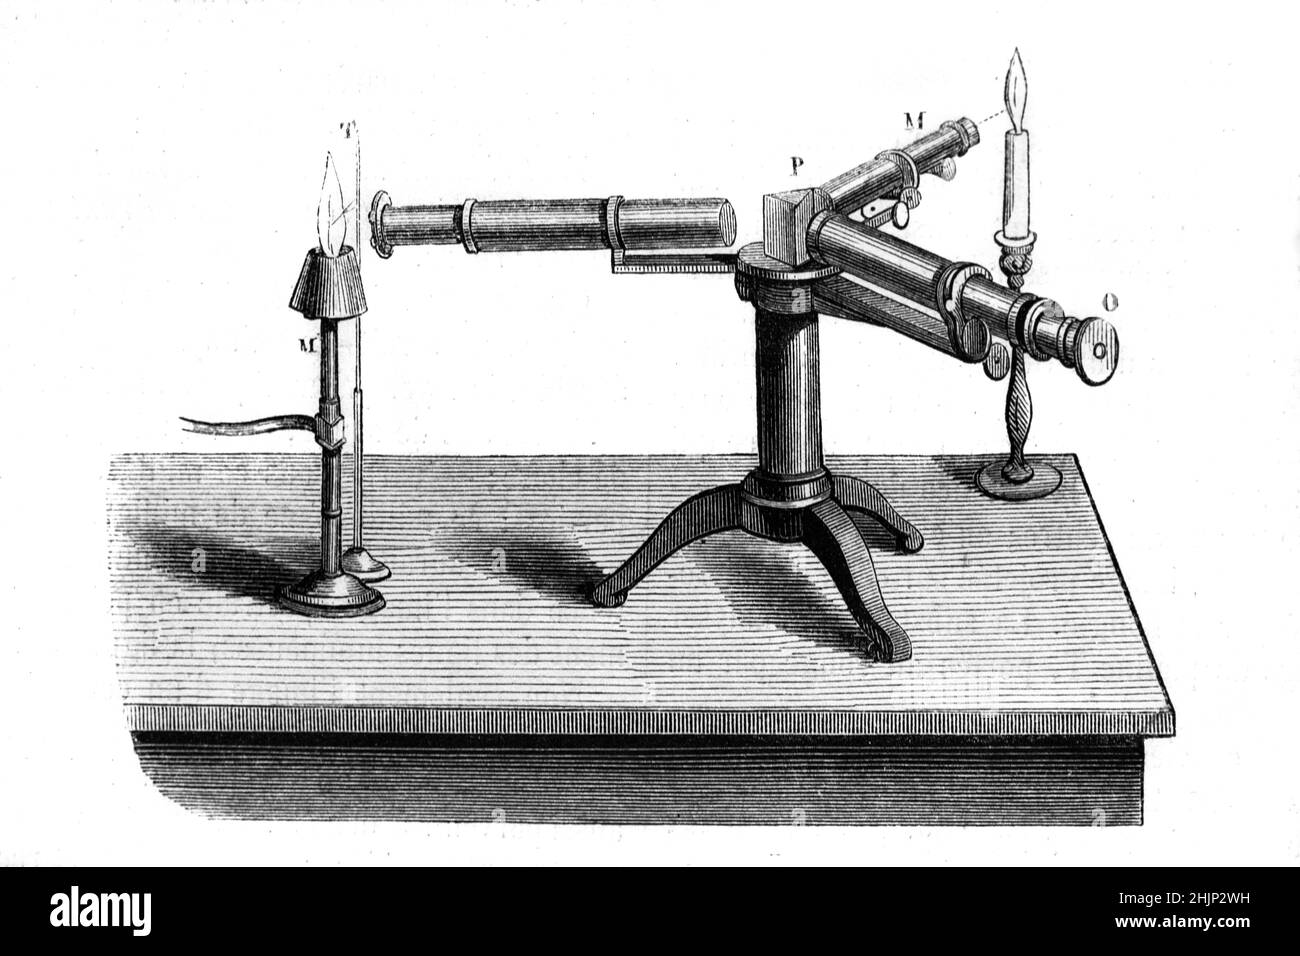 Spettroscopio precoce o spettrometro utilizzato in spettroscopia ottica. Illustrazione o incisione vintage 1865. Foto Stock